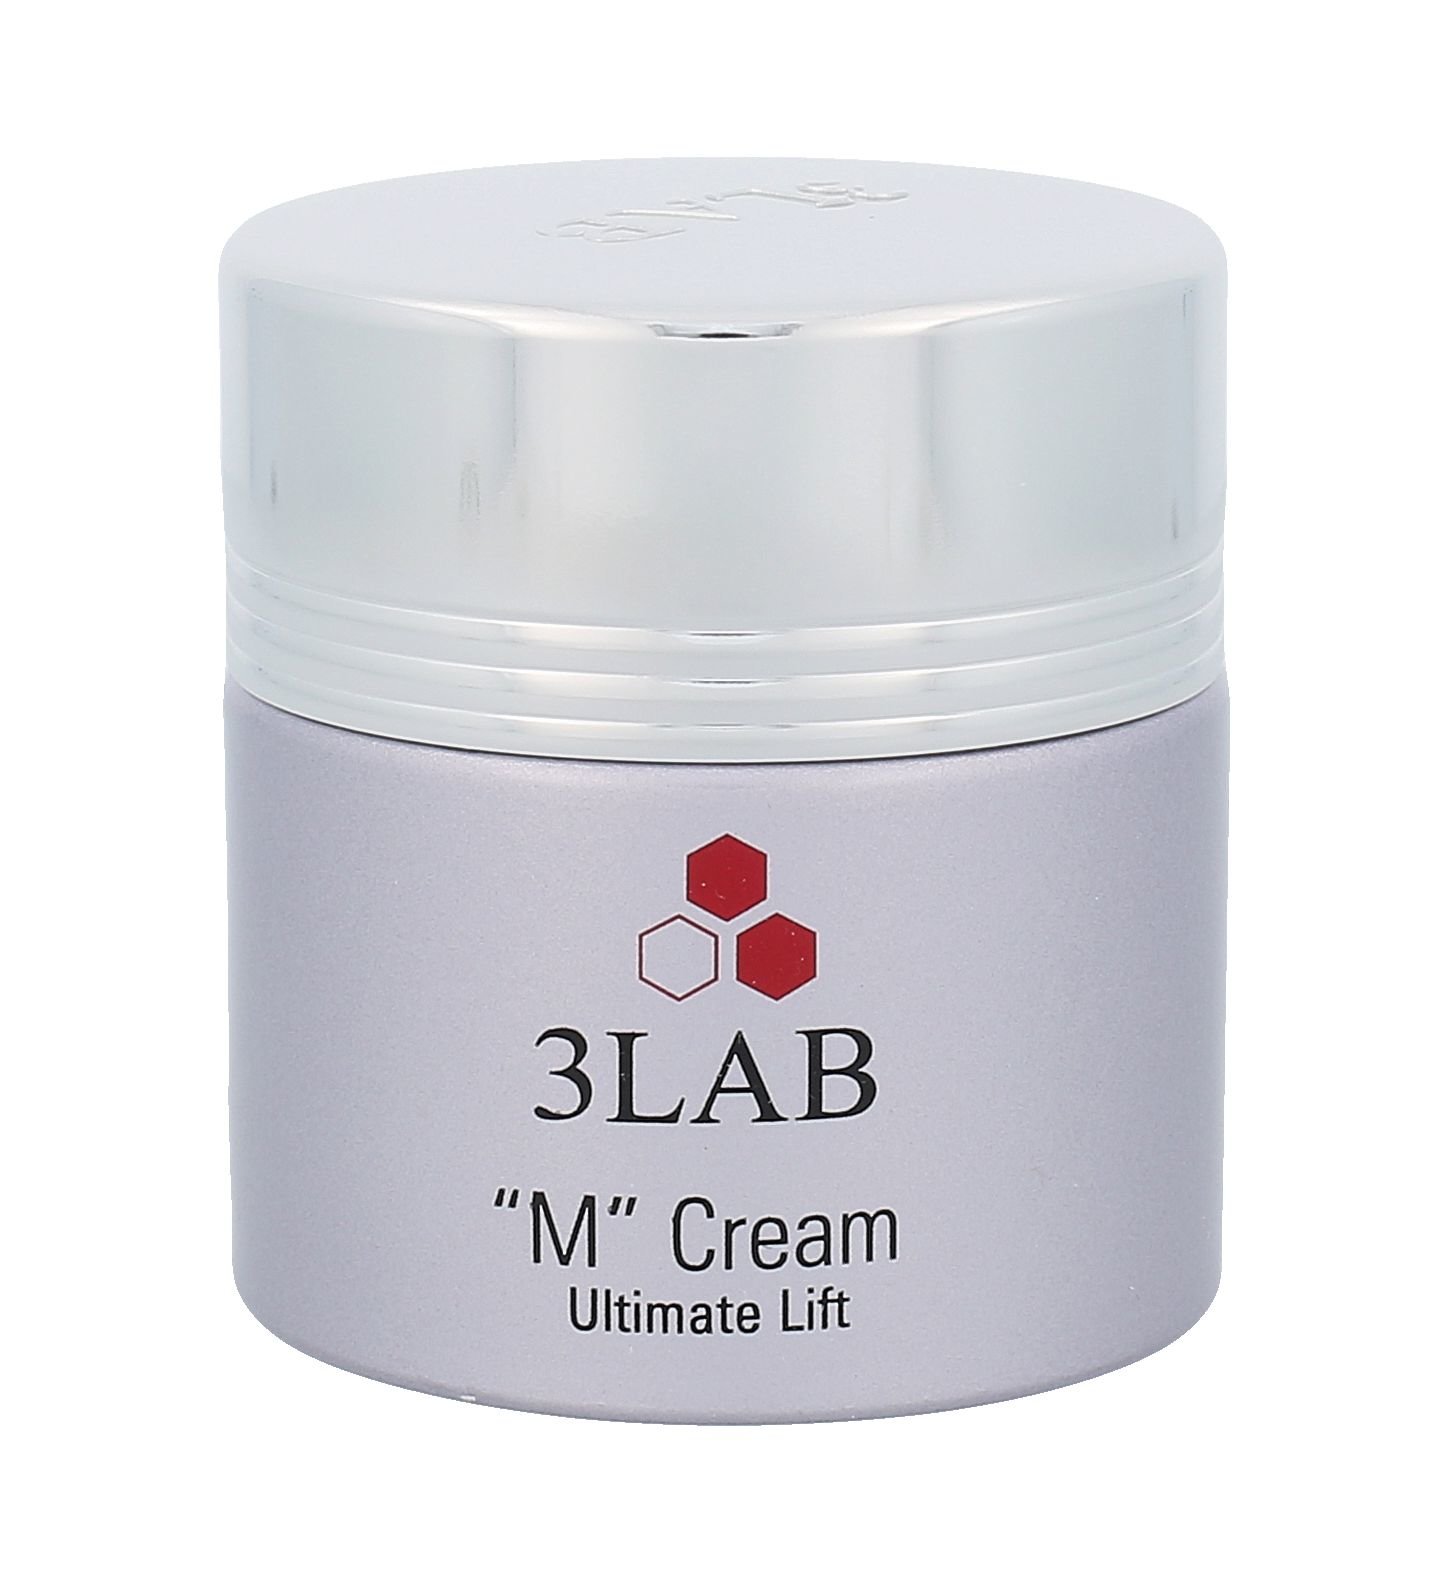 3LAB M Cream Ultimate Lift